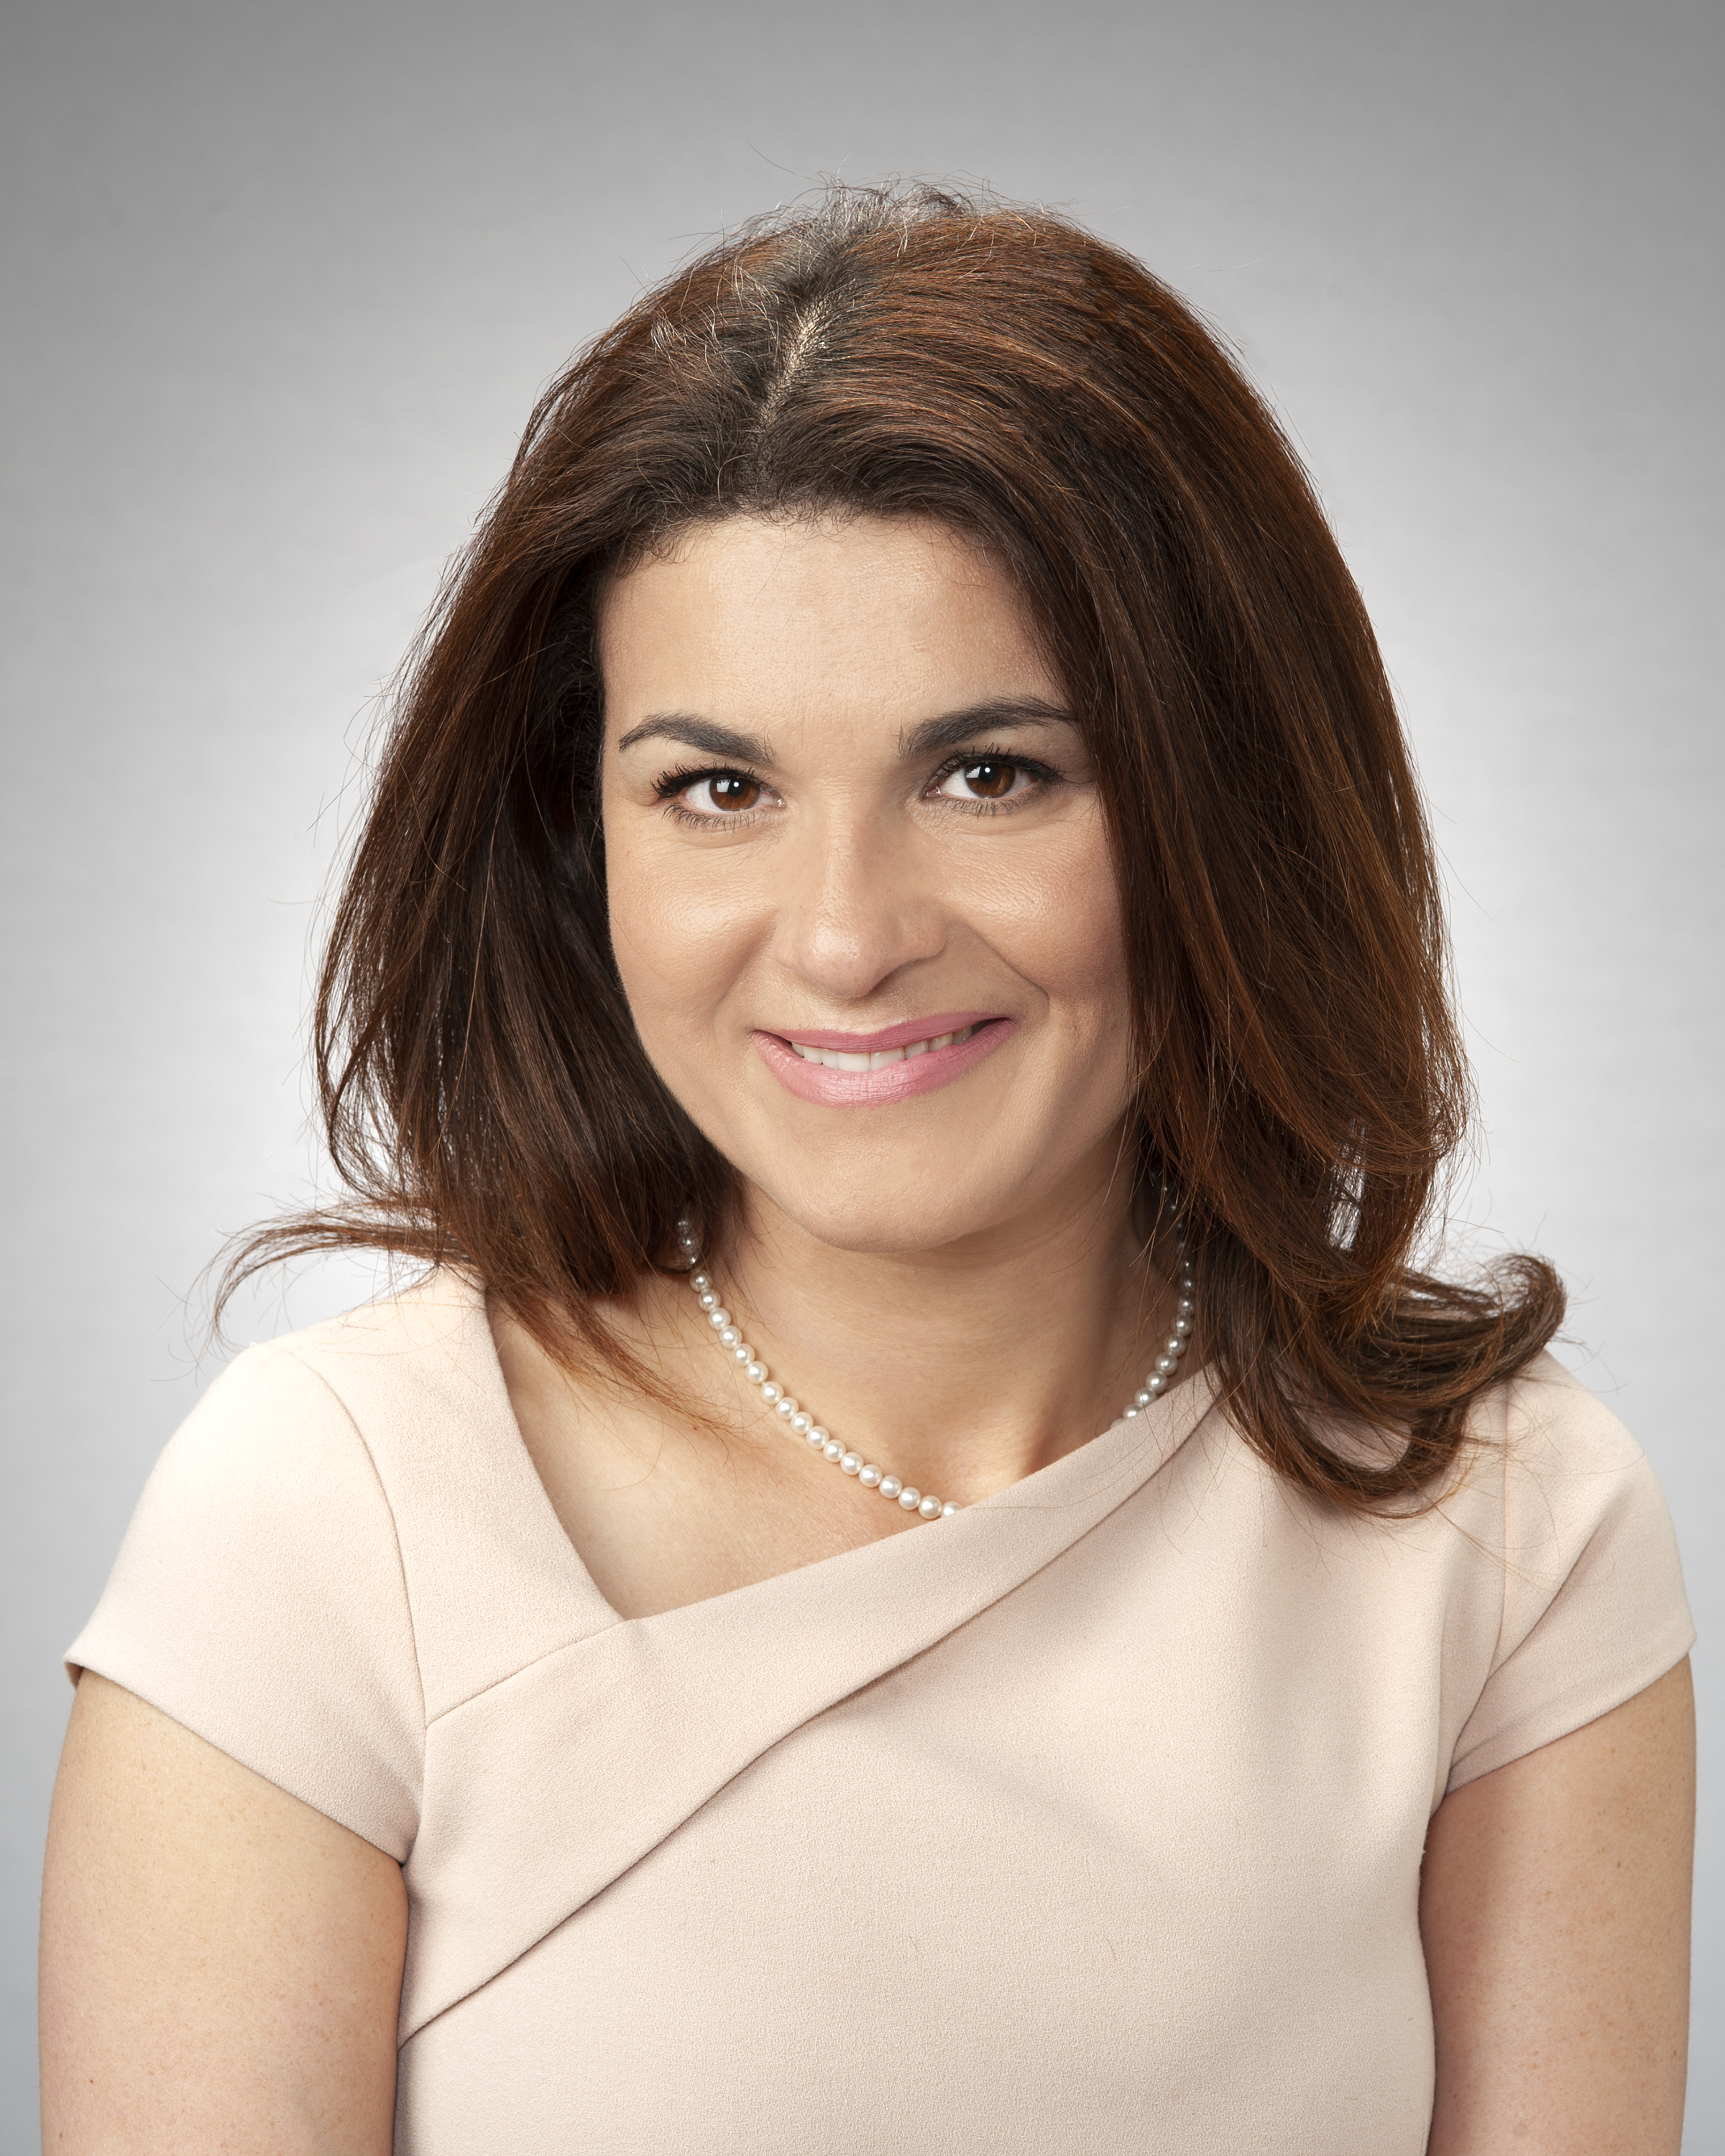 Dr. Nadine Melhem